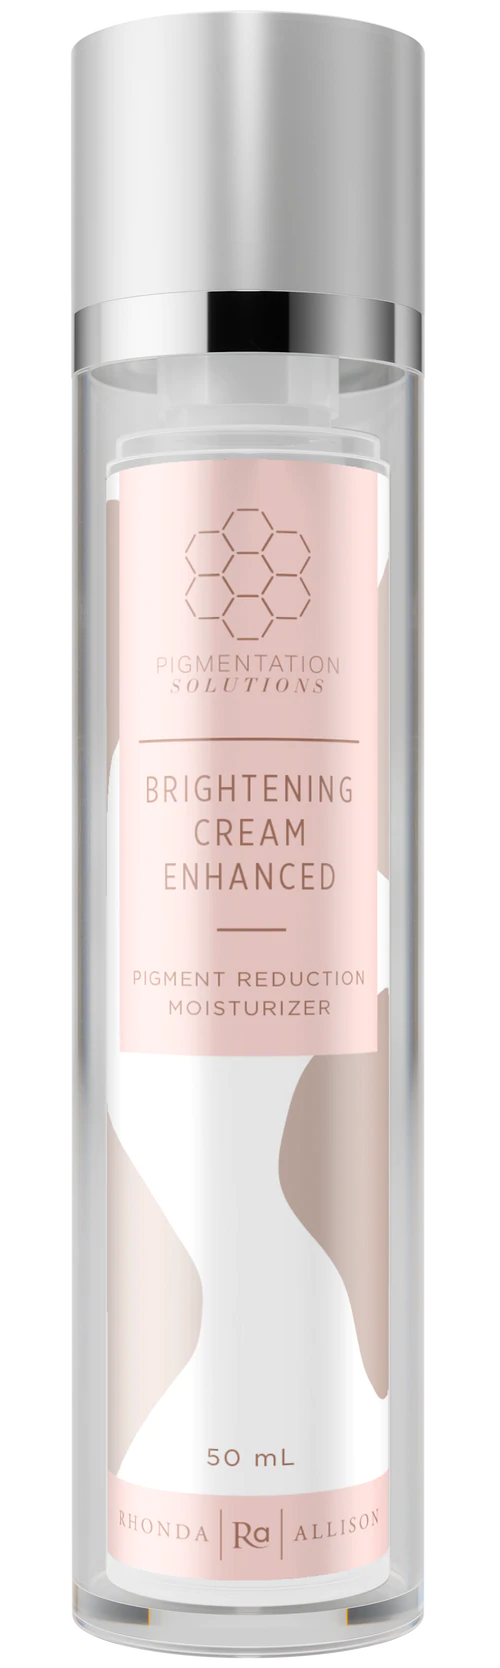 Brightening Cream Enhanced